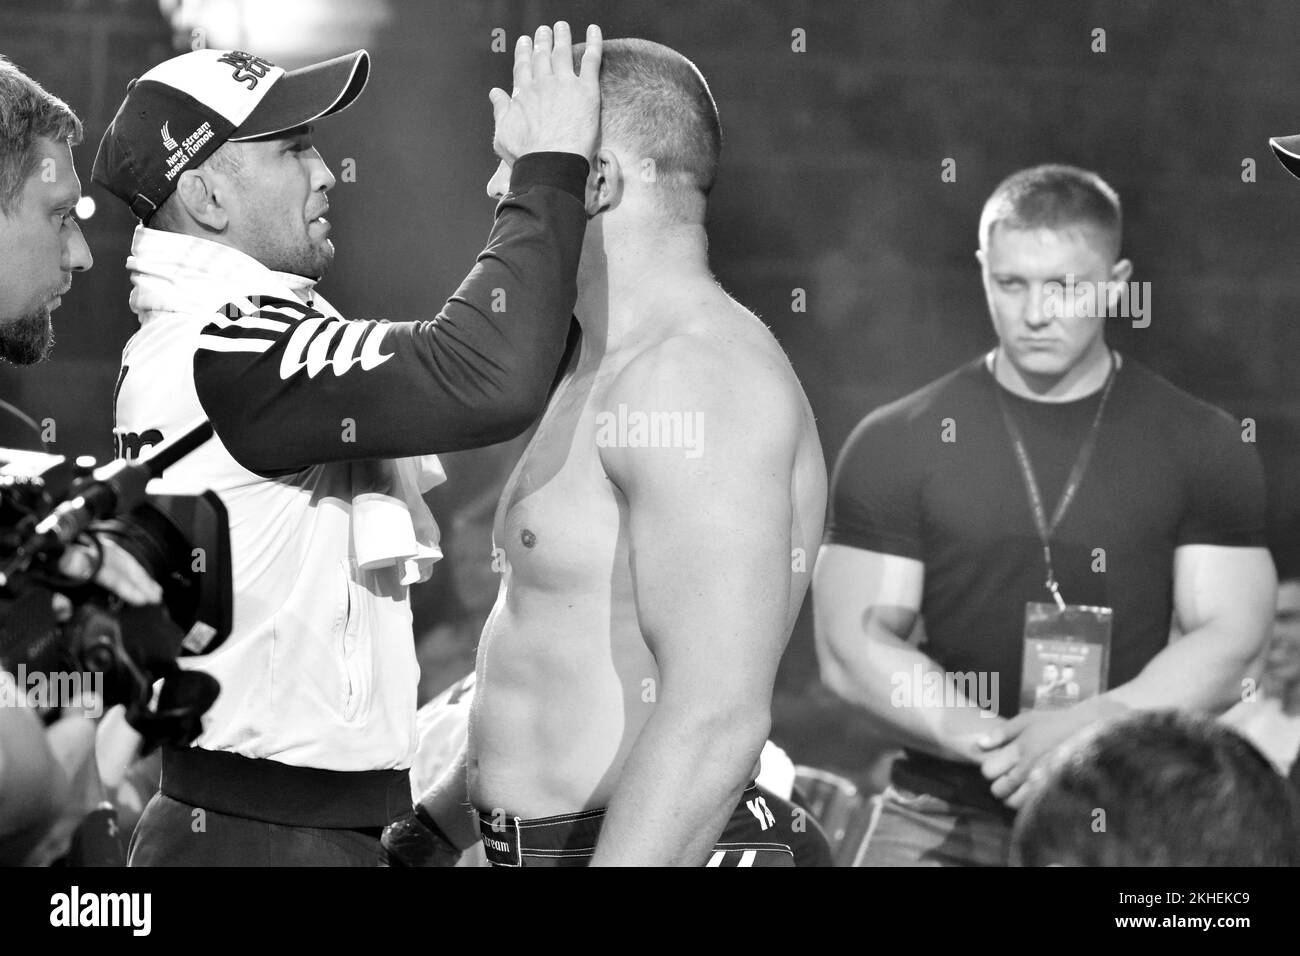 Orenbourg, Russie - 15 juin 2018: Combat des combattants de la MMA Marcus Vinicius Lopez (Brésil) - Maxim Yakobyuk (Russie) au tournoi "bataille dans l'audition Banque D'Images